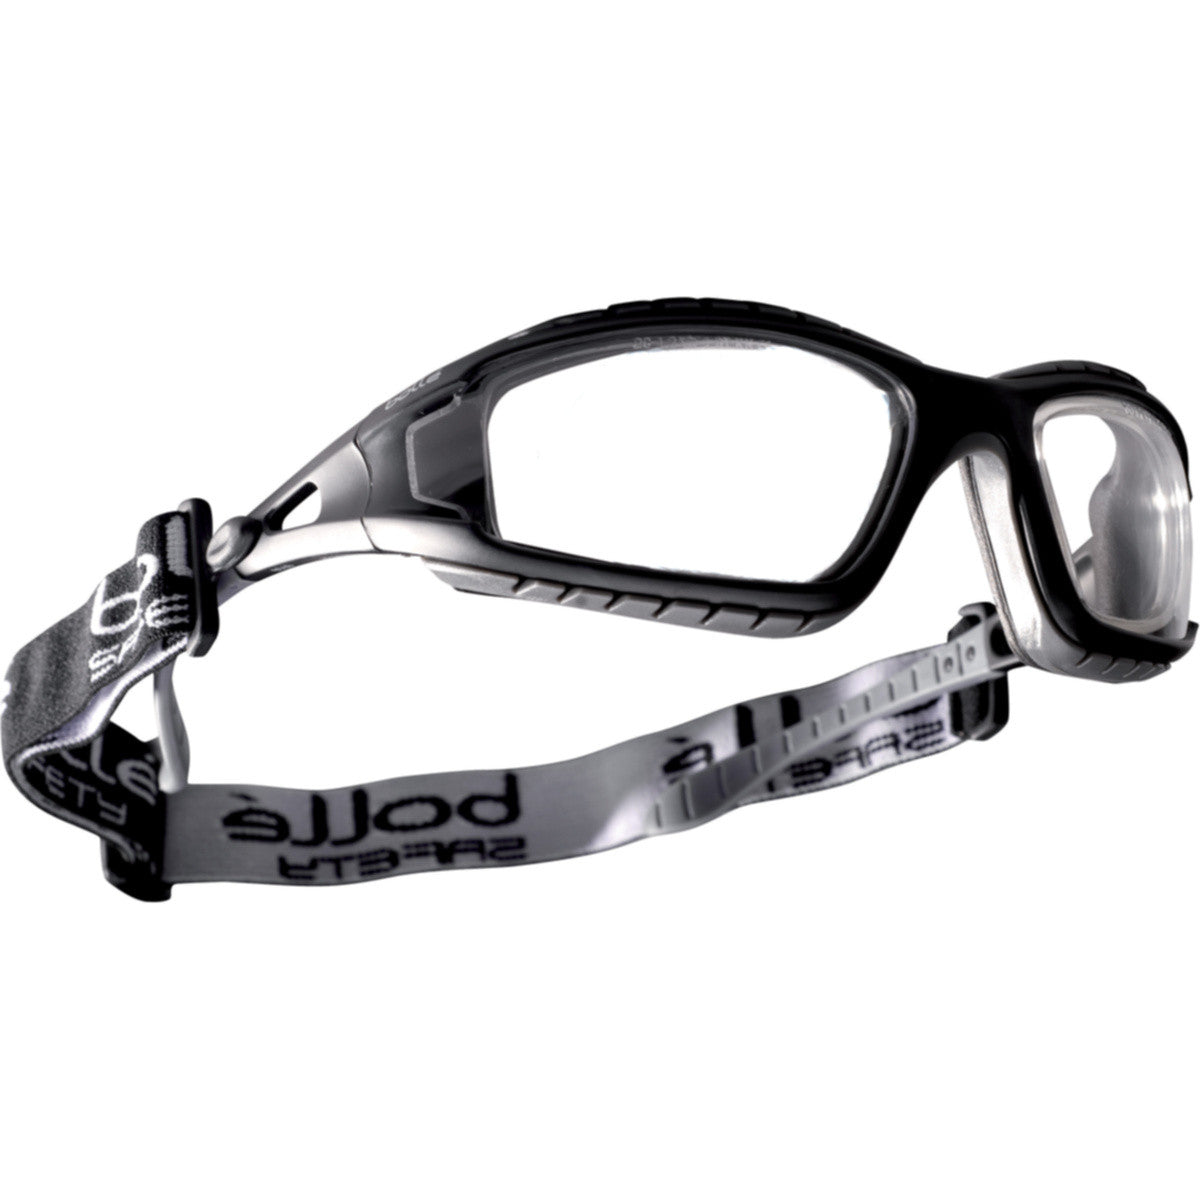 Bollé Safety Tracker II Safety Glasses